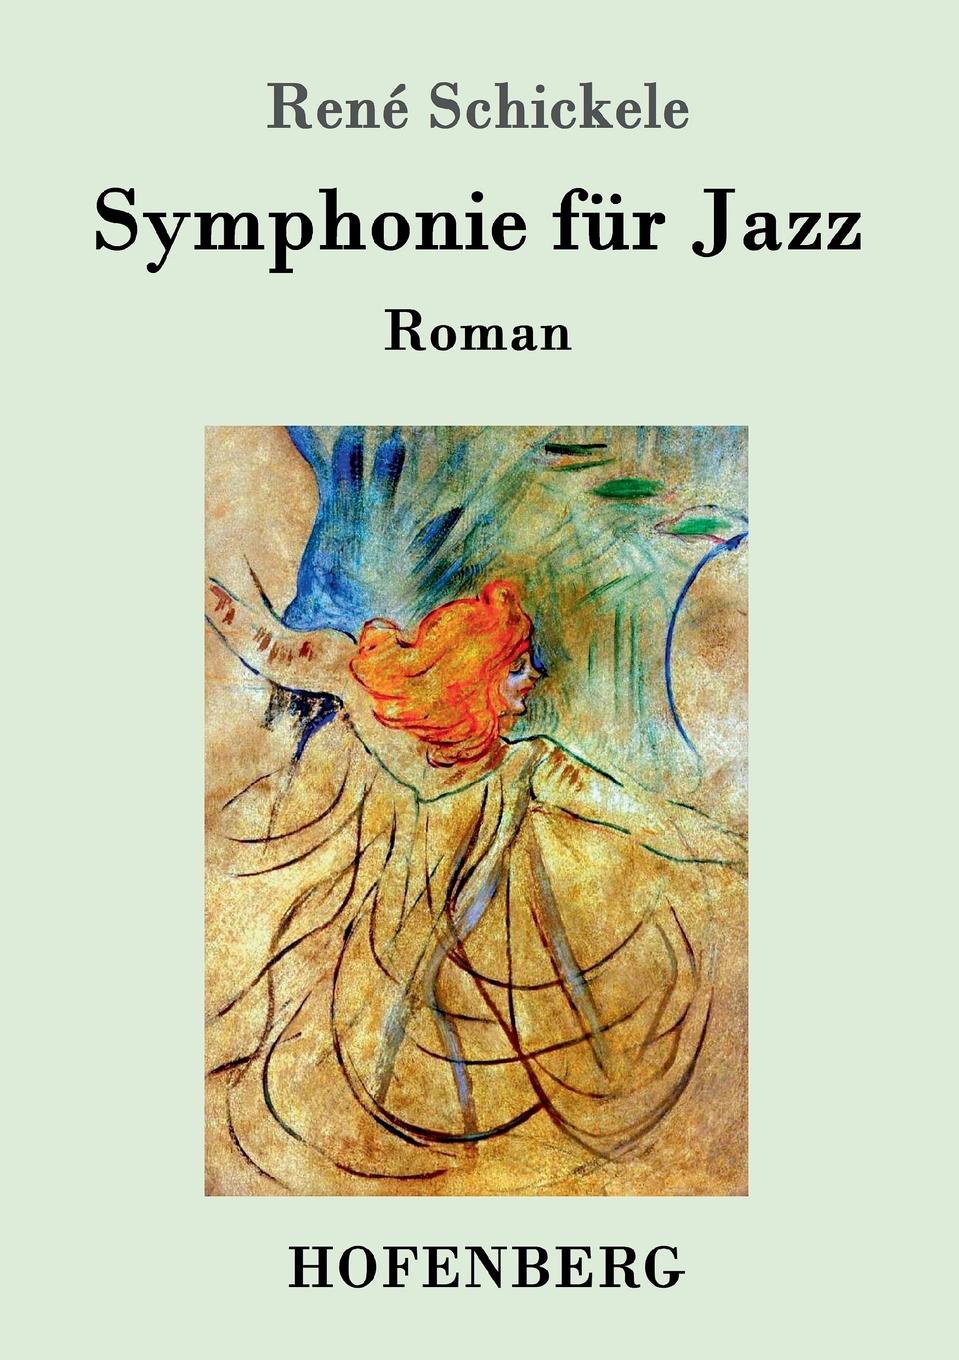 René Schickele Symphonie fur Jazz